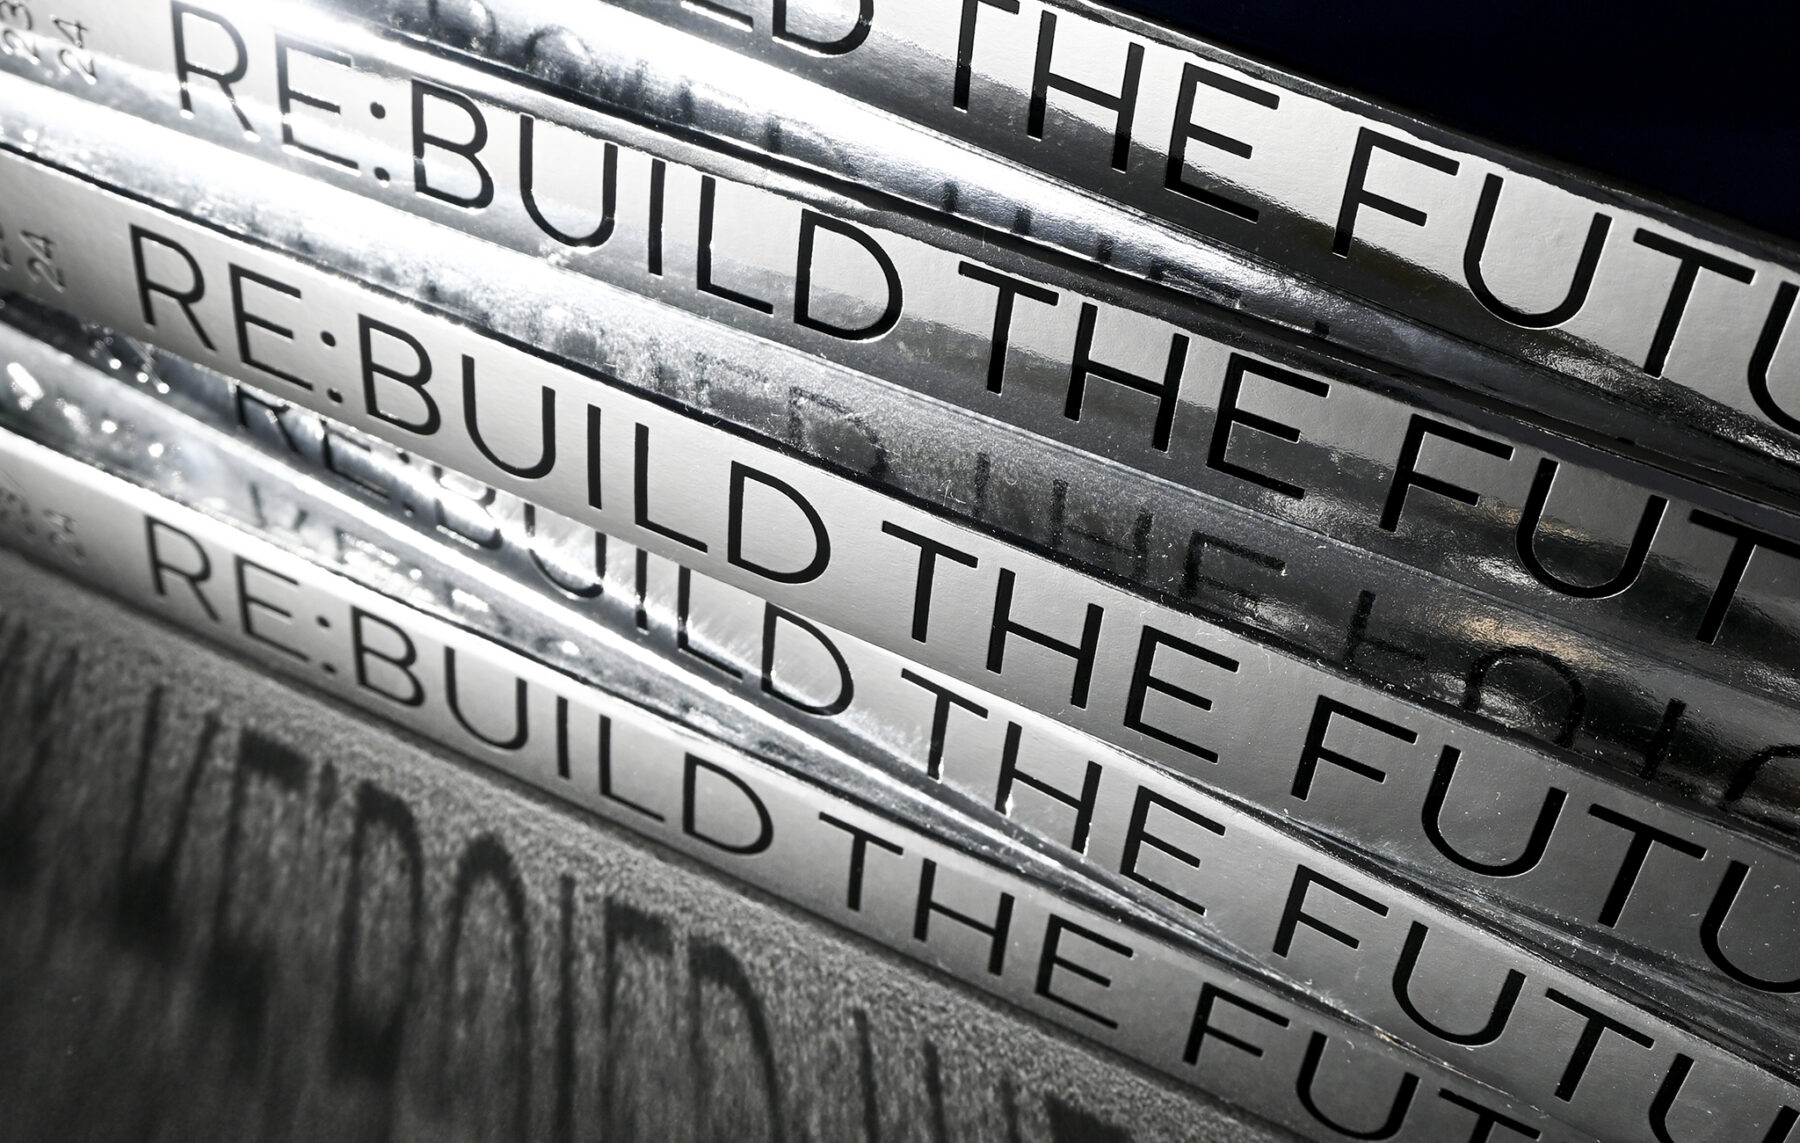 Re:build the future – Bookazine °2 (1)